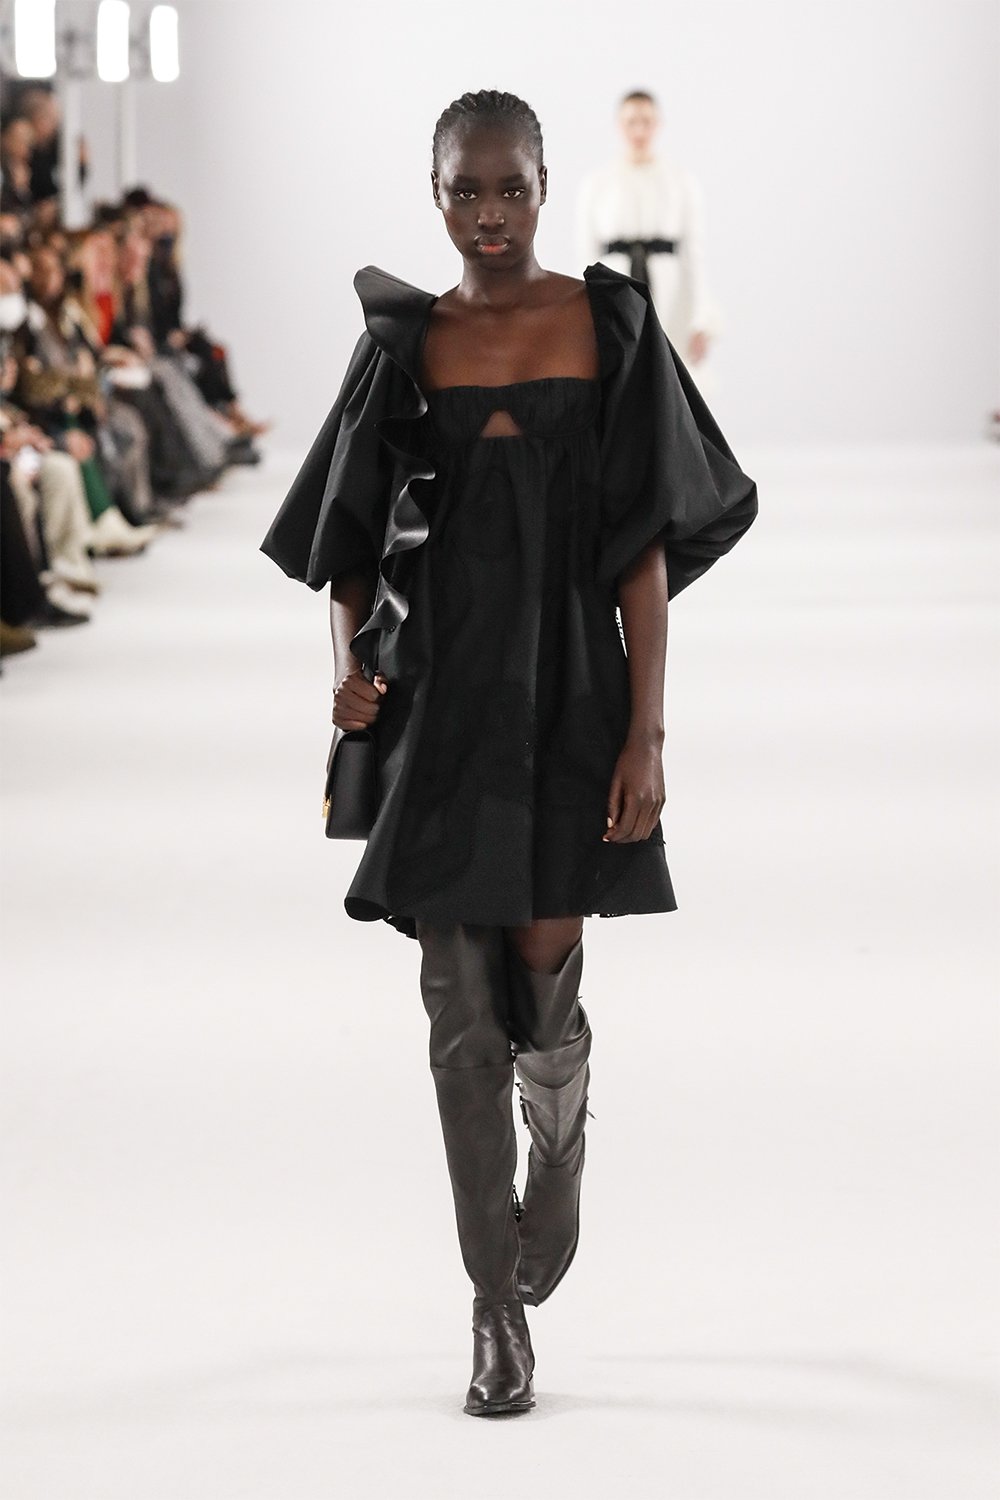 CHIQUE - Extralonga Carolina Herrera: em preto, calçado confere sofisticação ao look -